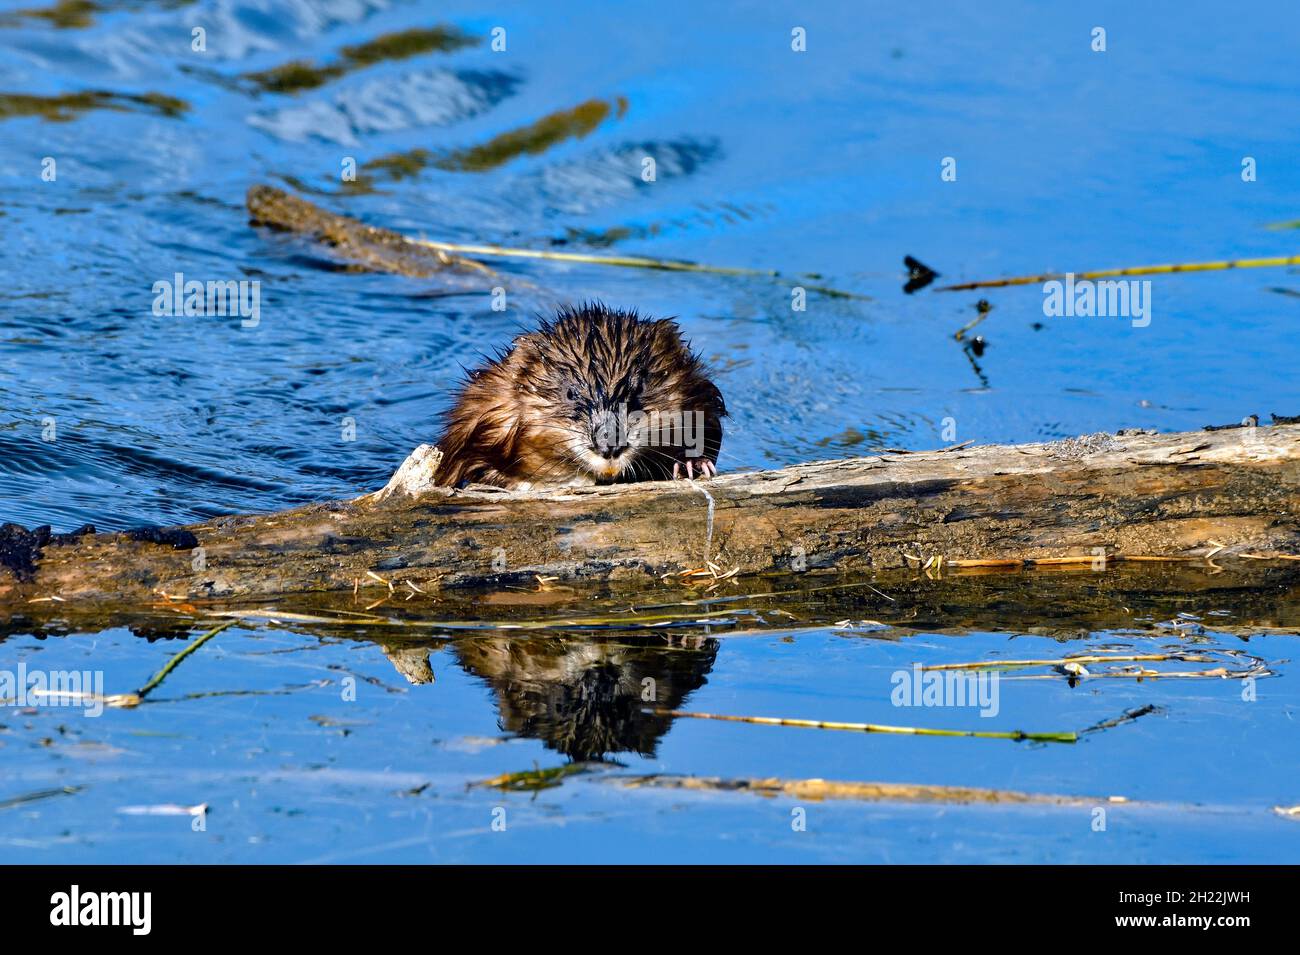 Une vue de face d'un rat musqué sauvage 'Ondatra zibethicus' qui s'enescalade hors de l'eau sur un arbre creux dans un étang de castors dans la région rurale du Canada de l'Alberta Banque D'Images